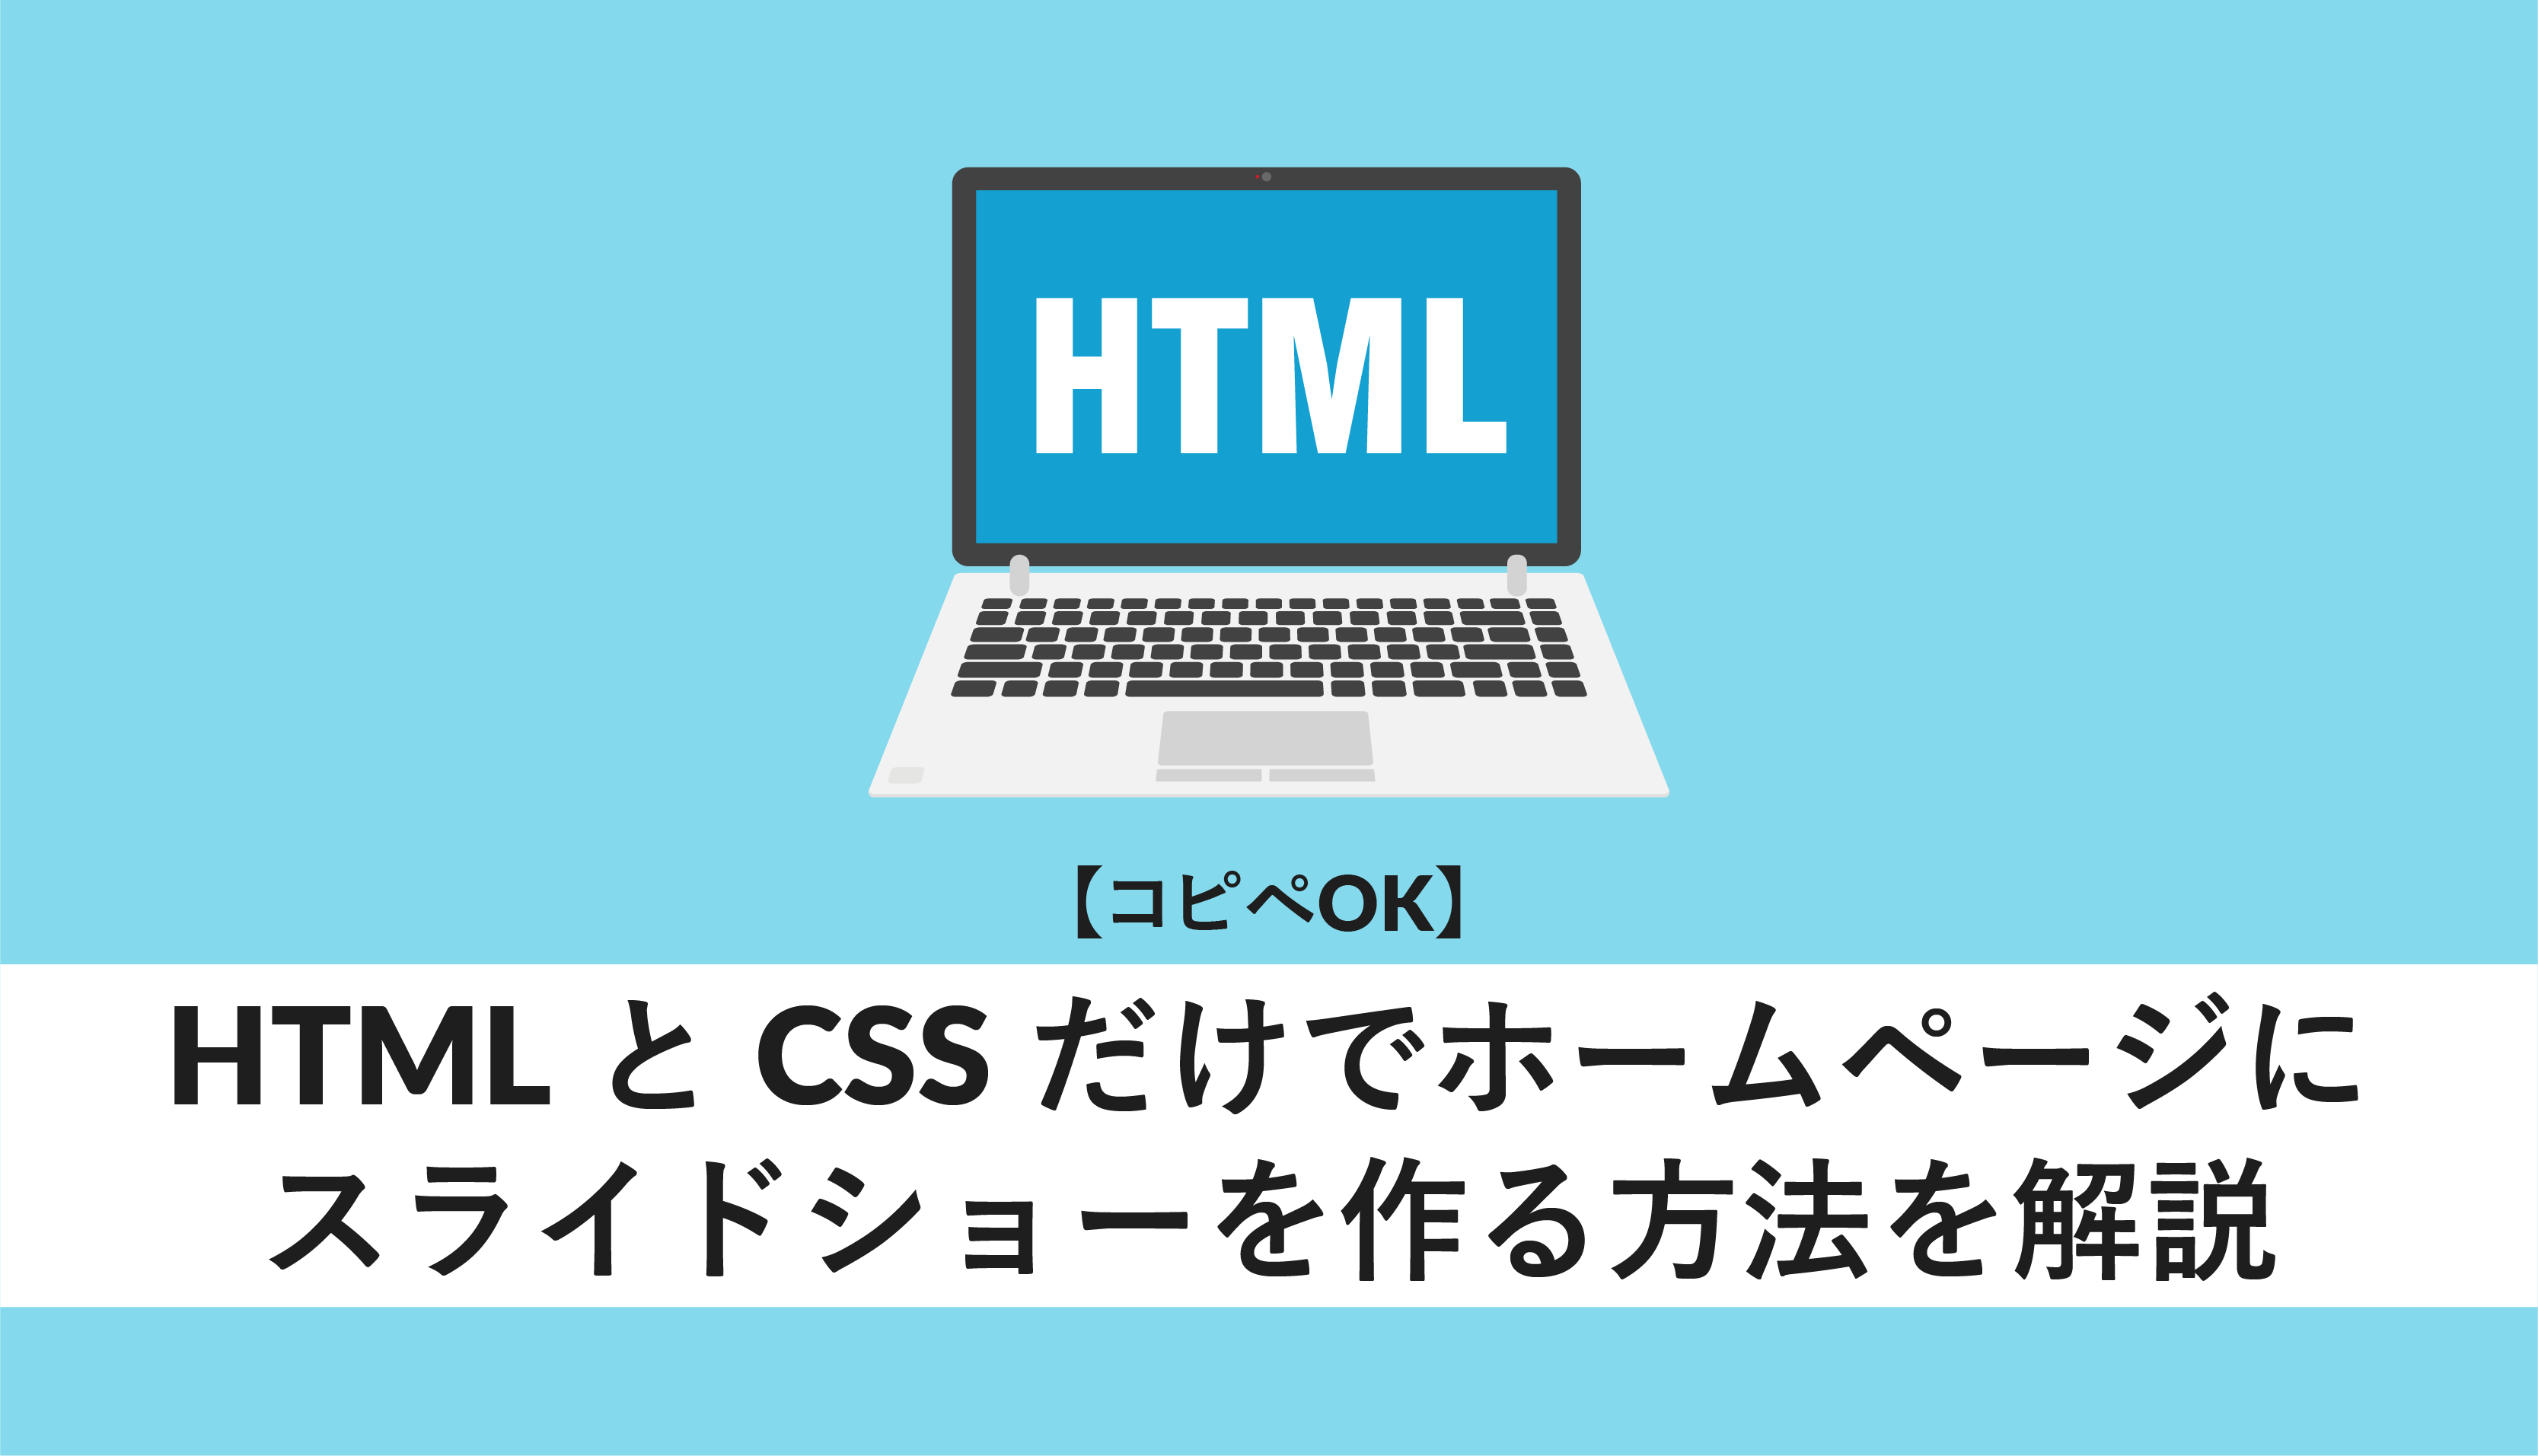 html スライドショー